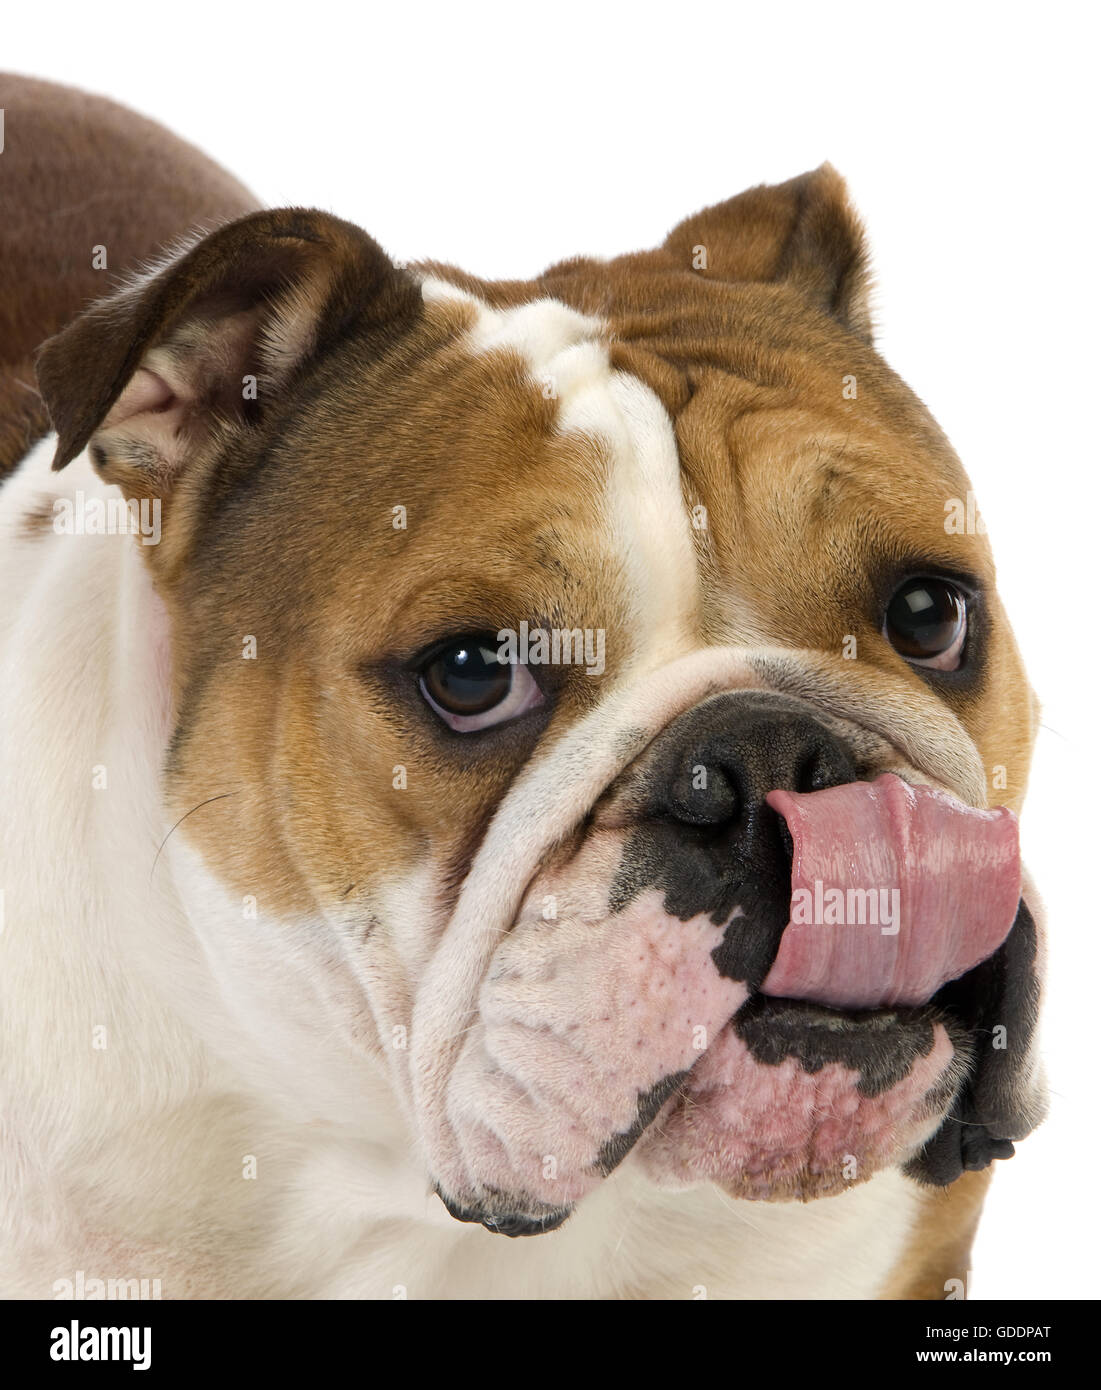 Bulldog anglais, femme de lécher son bruit, contre fond blanc Banque D'Images